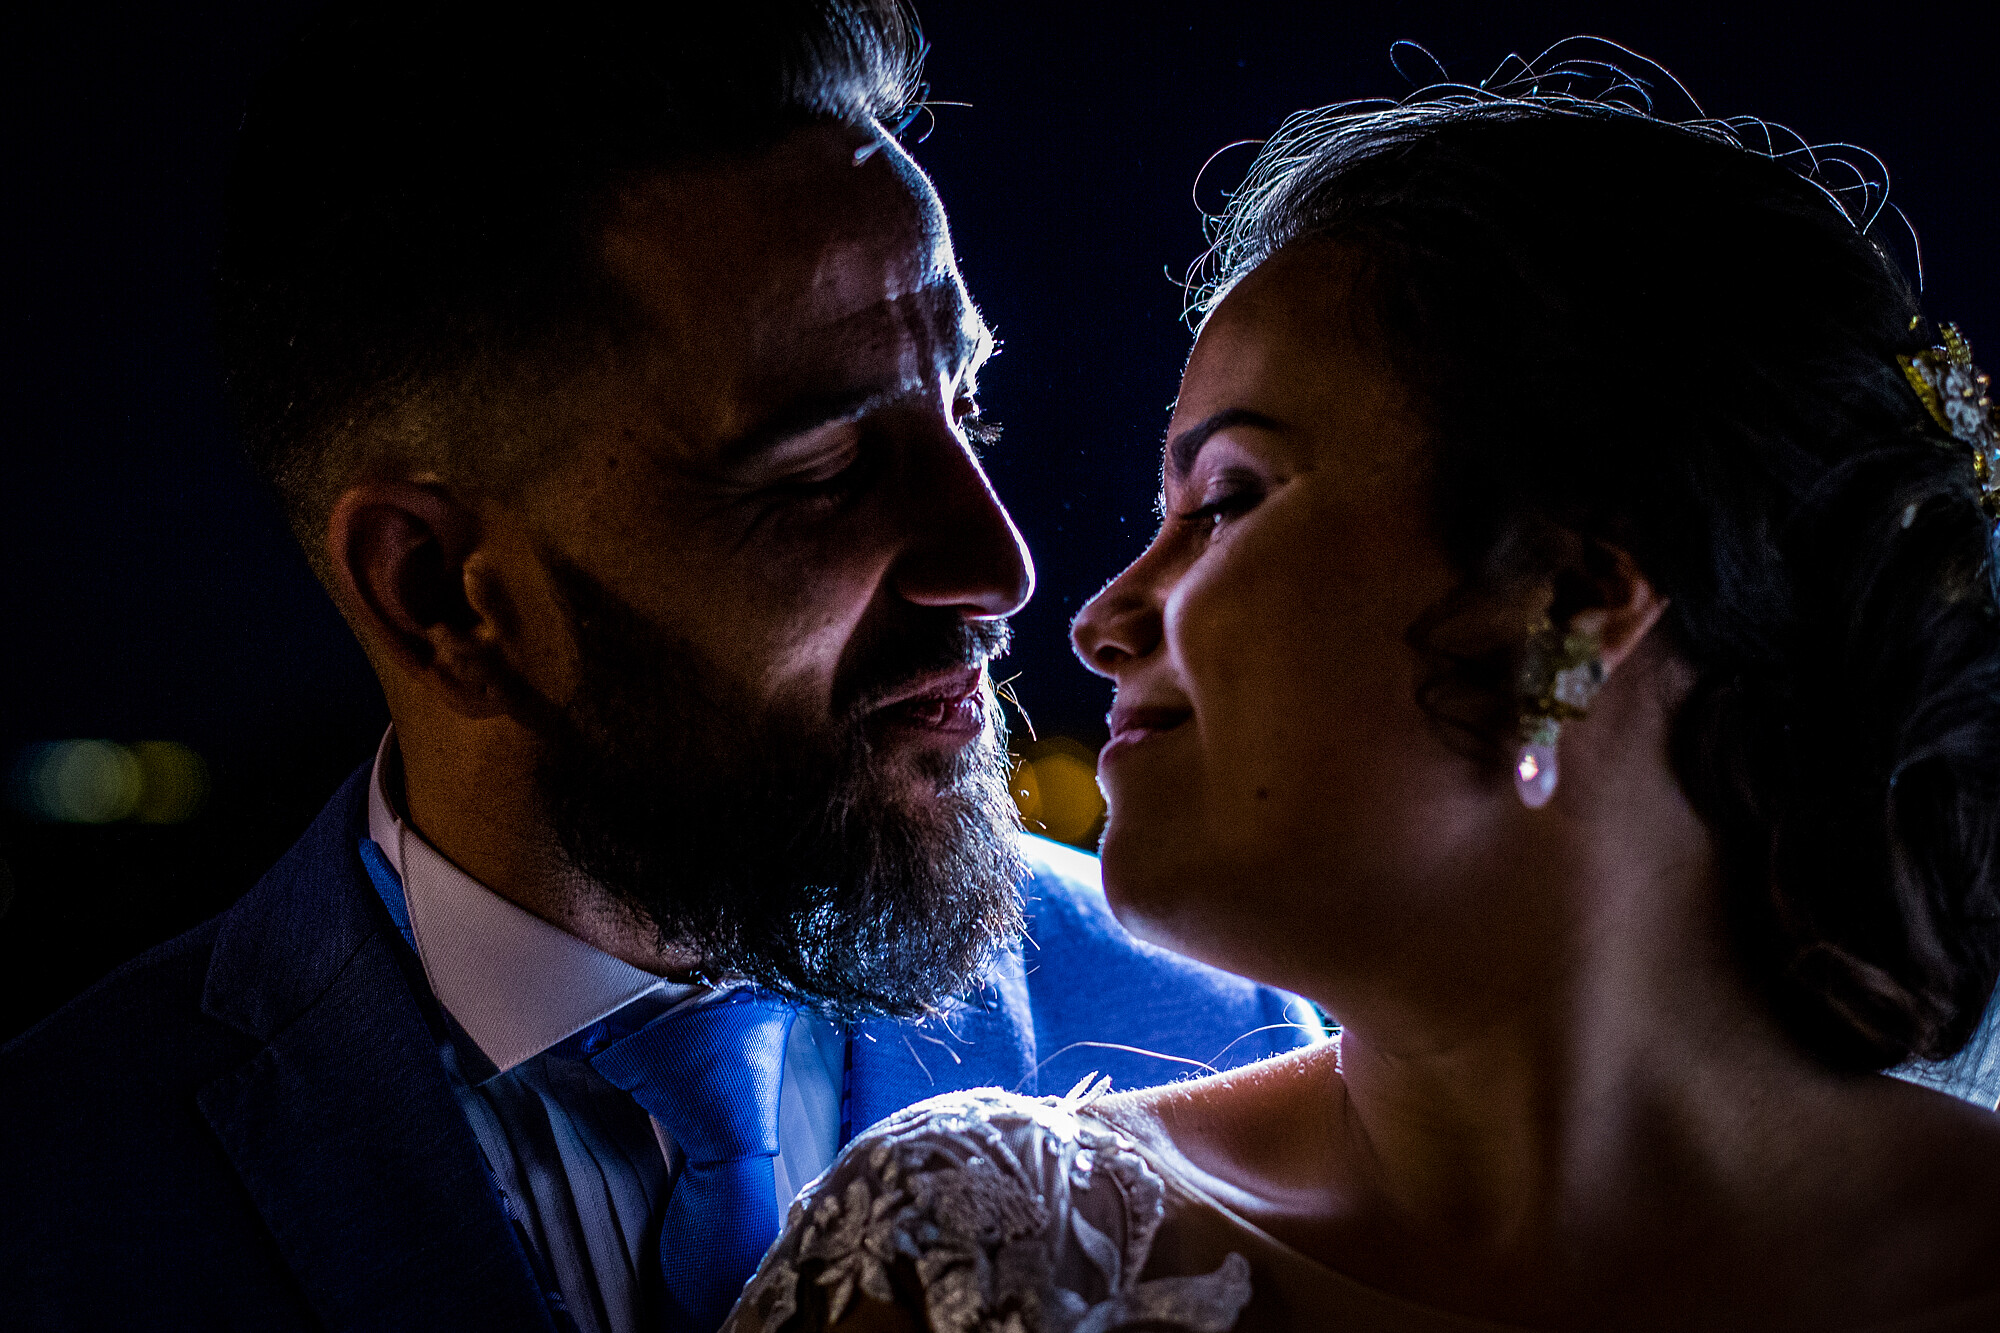 Albuera Morales Fotografía - Fotógrafo de bodas en Montoro - Fotógrafo de bodas en Córdoba y provincia - albuera-morales-fotografia-14.jpg